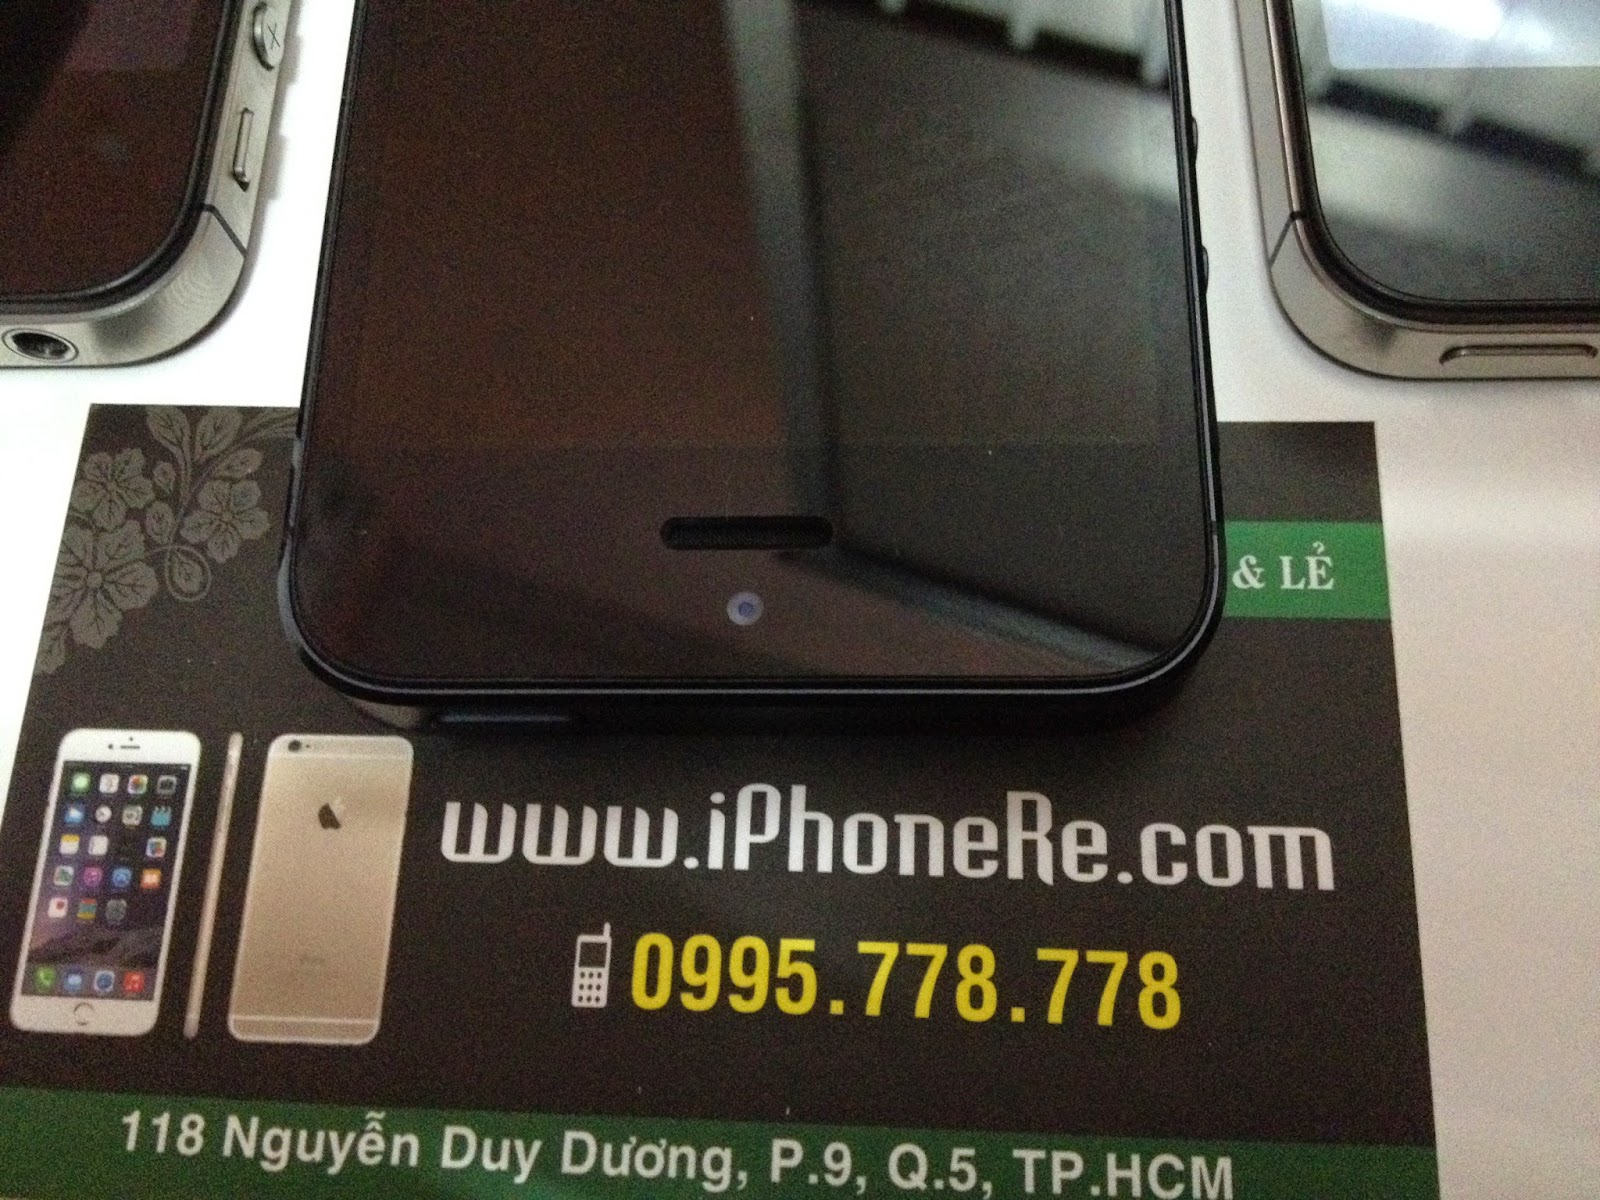 IPhone 5 64Gb Quốc tế Đẹp keng ZIn ALL giá bèo ********** - 3